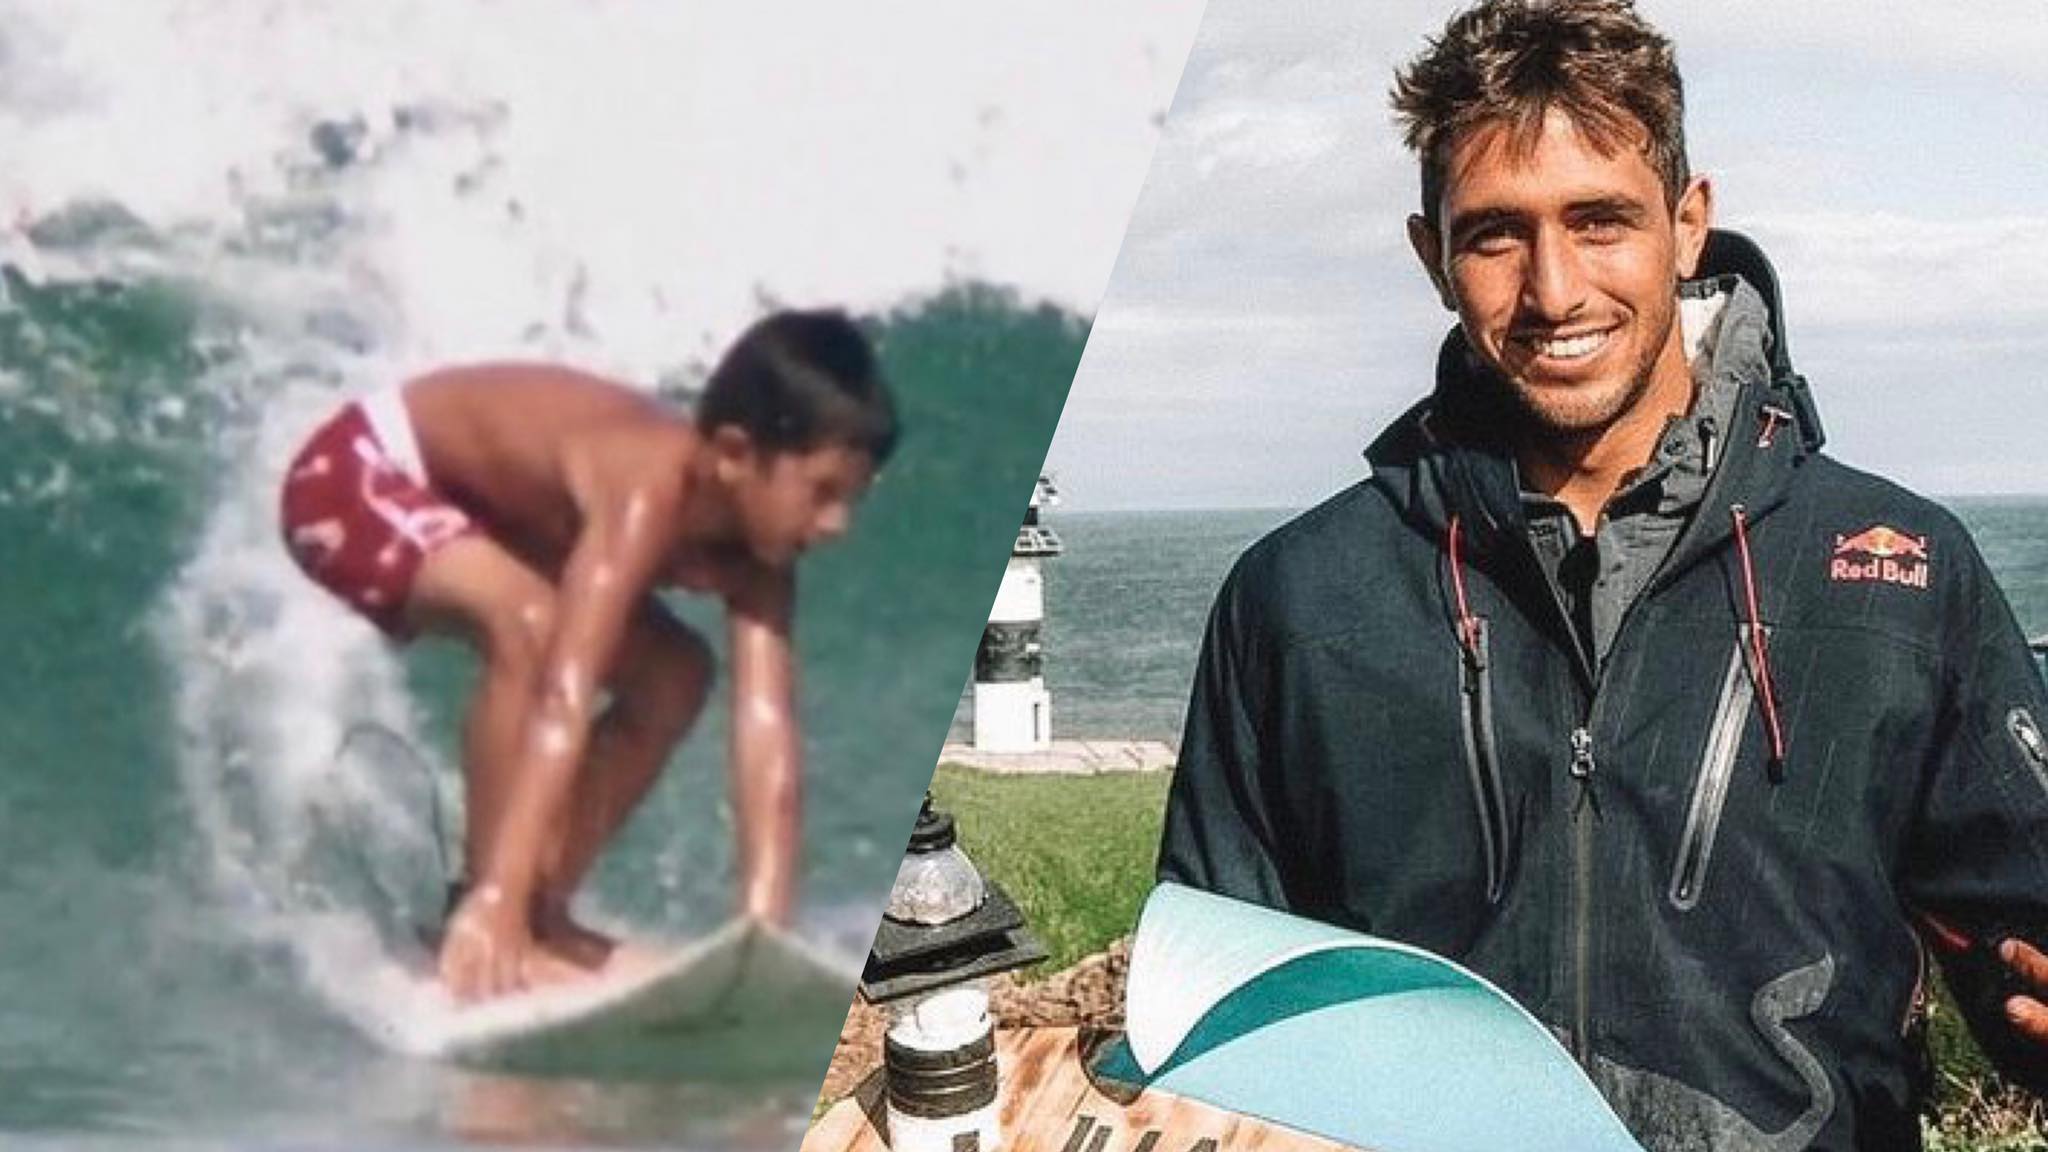 Lucas Chumbo começou a surfar com 3 anos e a participar de campeonatos (montagem: Fashion Bubbles)